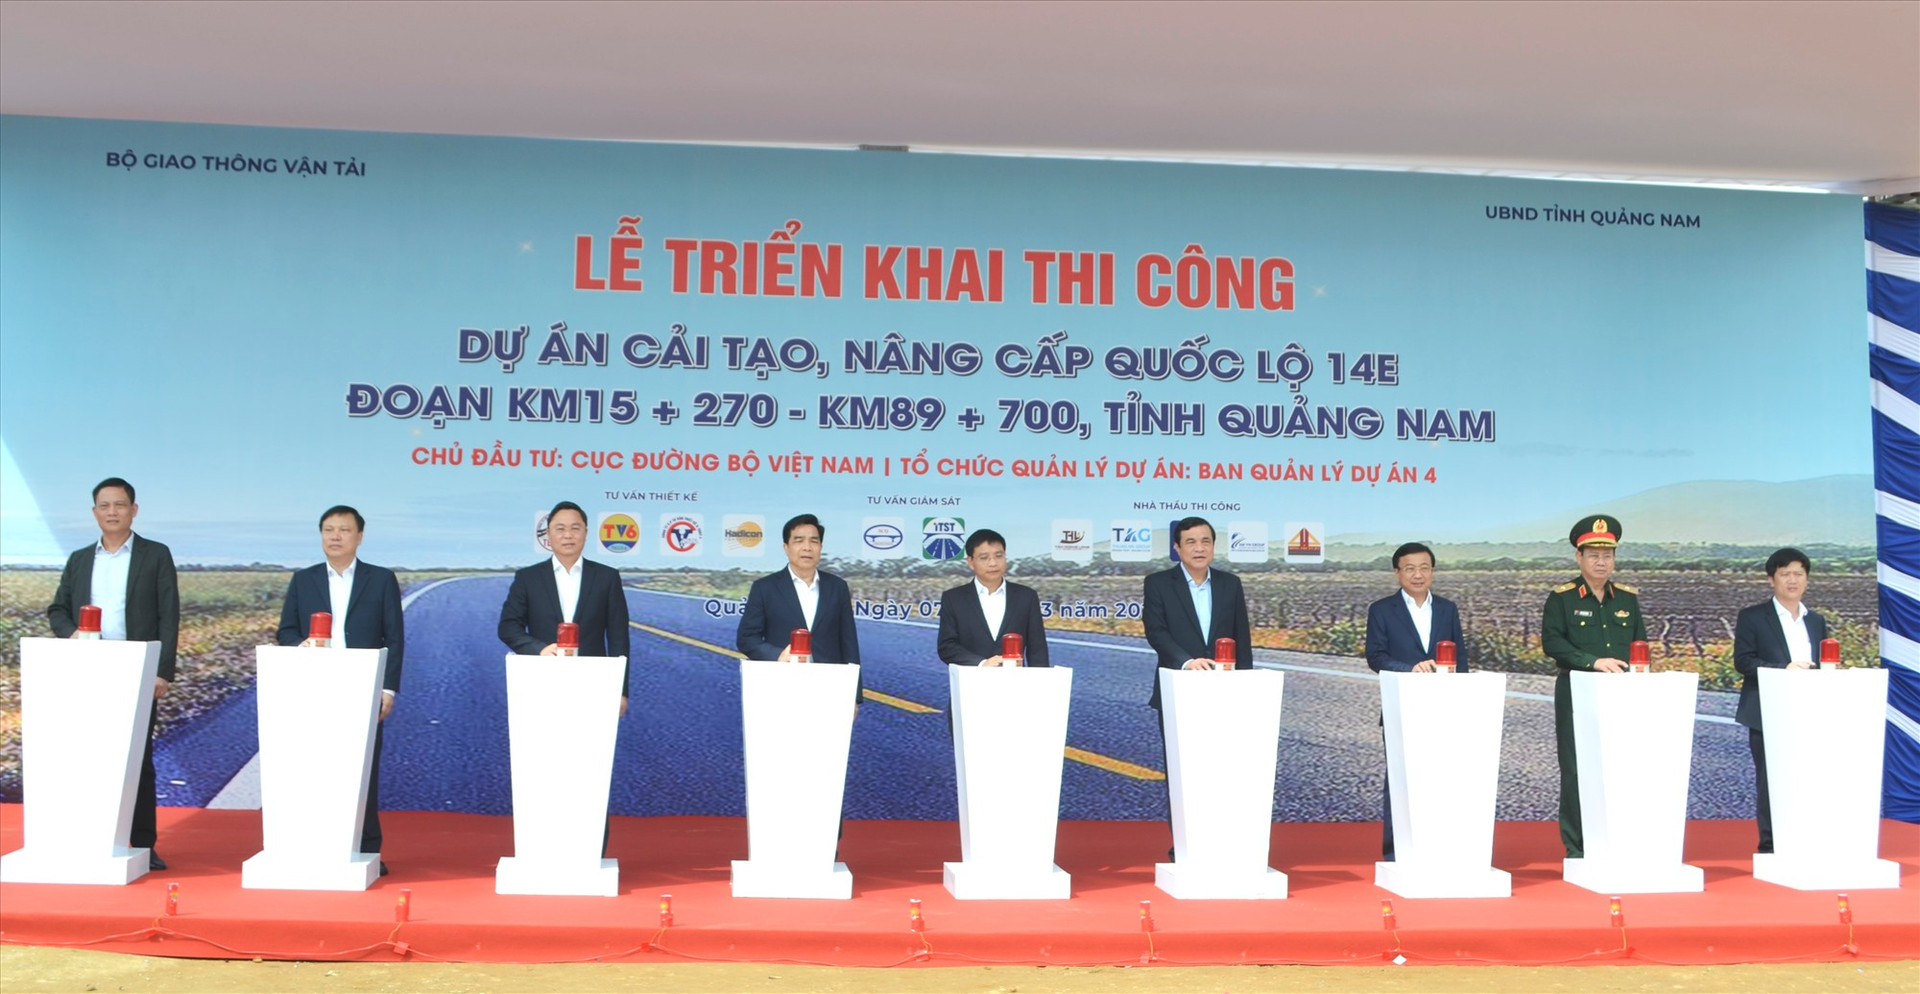 Bộ GTVT khởi công dự án cải tạo, nâng cấp quốc lộ 14E qua Quảng Nam vào ngày 7/3/2023. Ảnh: C.T